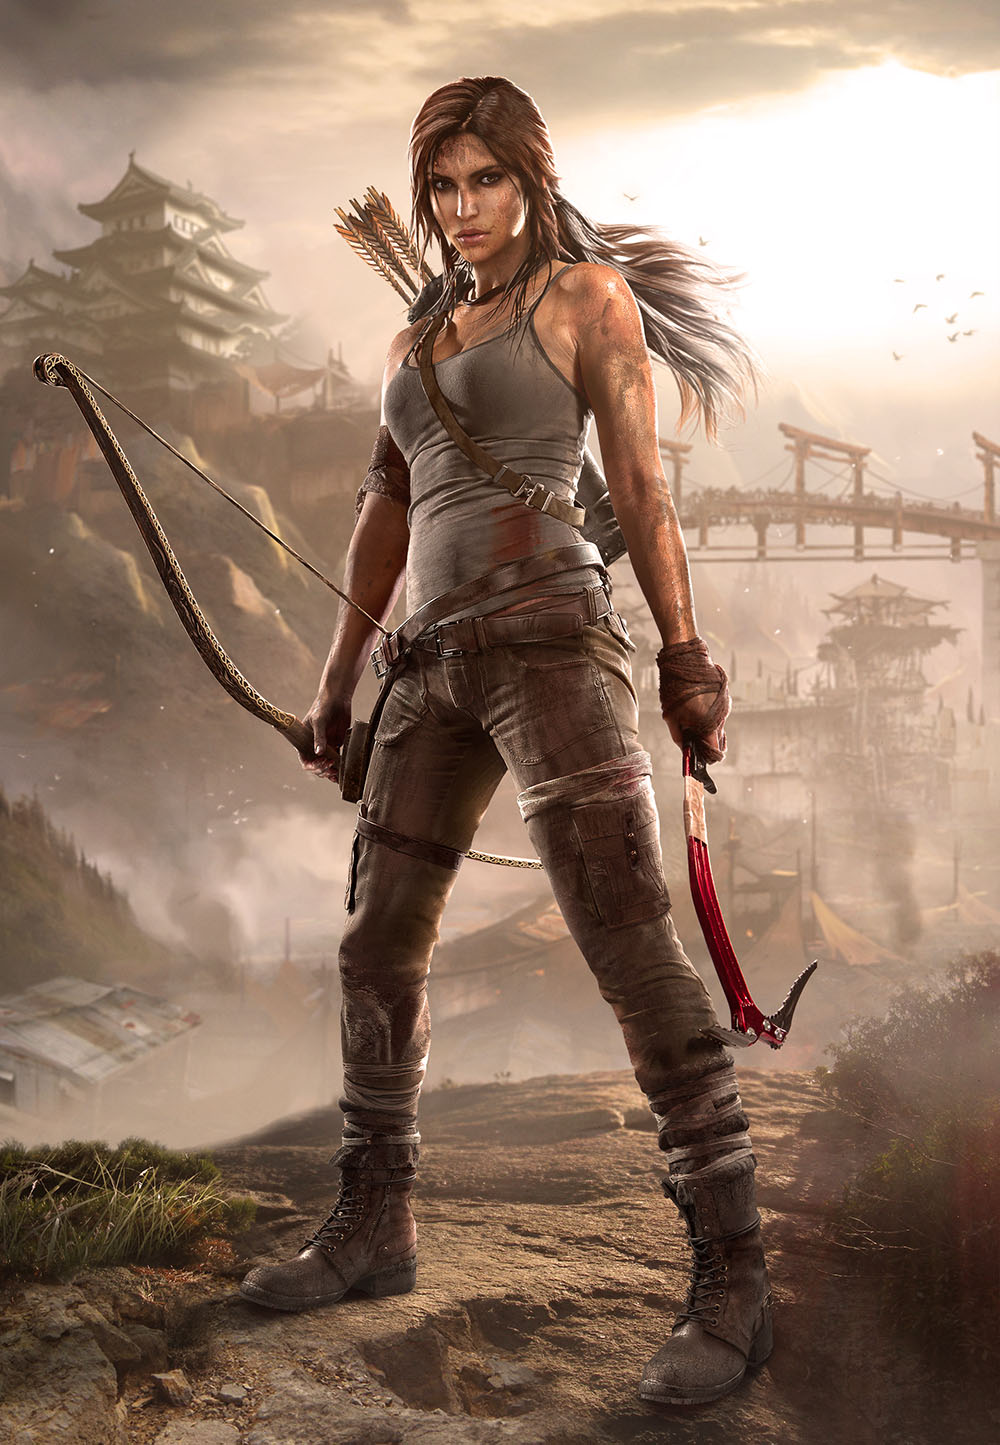 HQ Lara Croft: Tomb Raider Wallpapers | File 264.32Kb